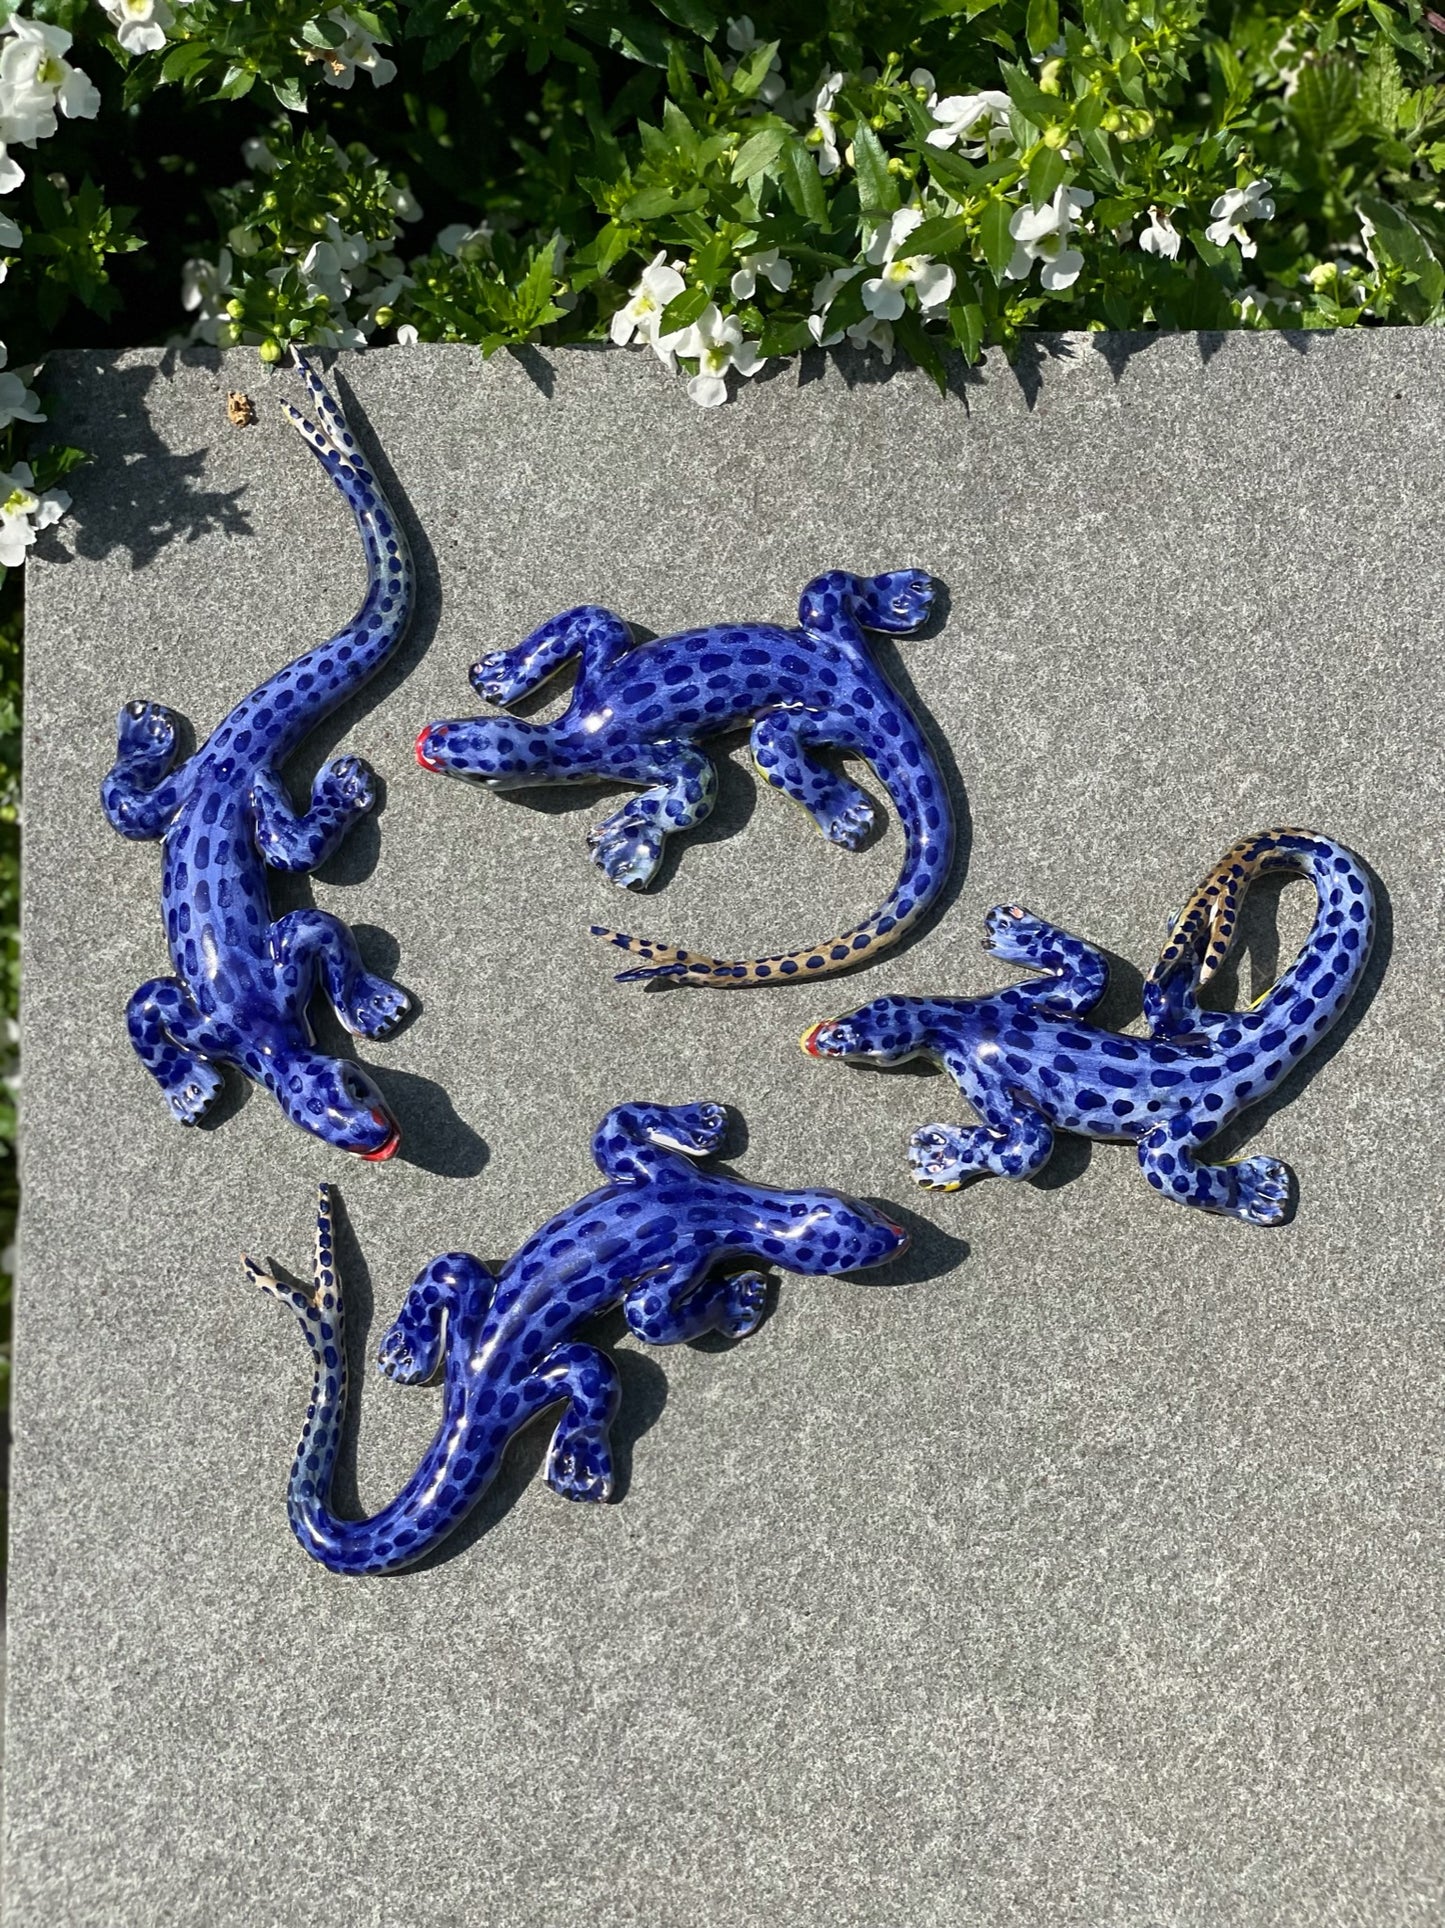 Lucertola Azzurra - Blue Lizard